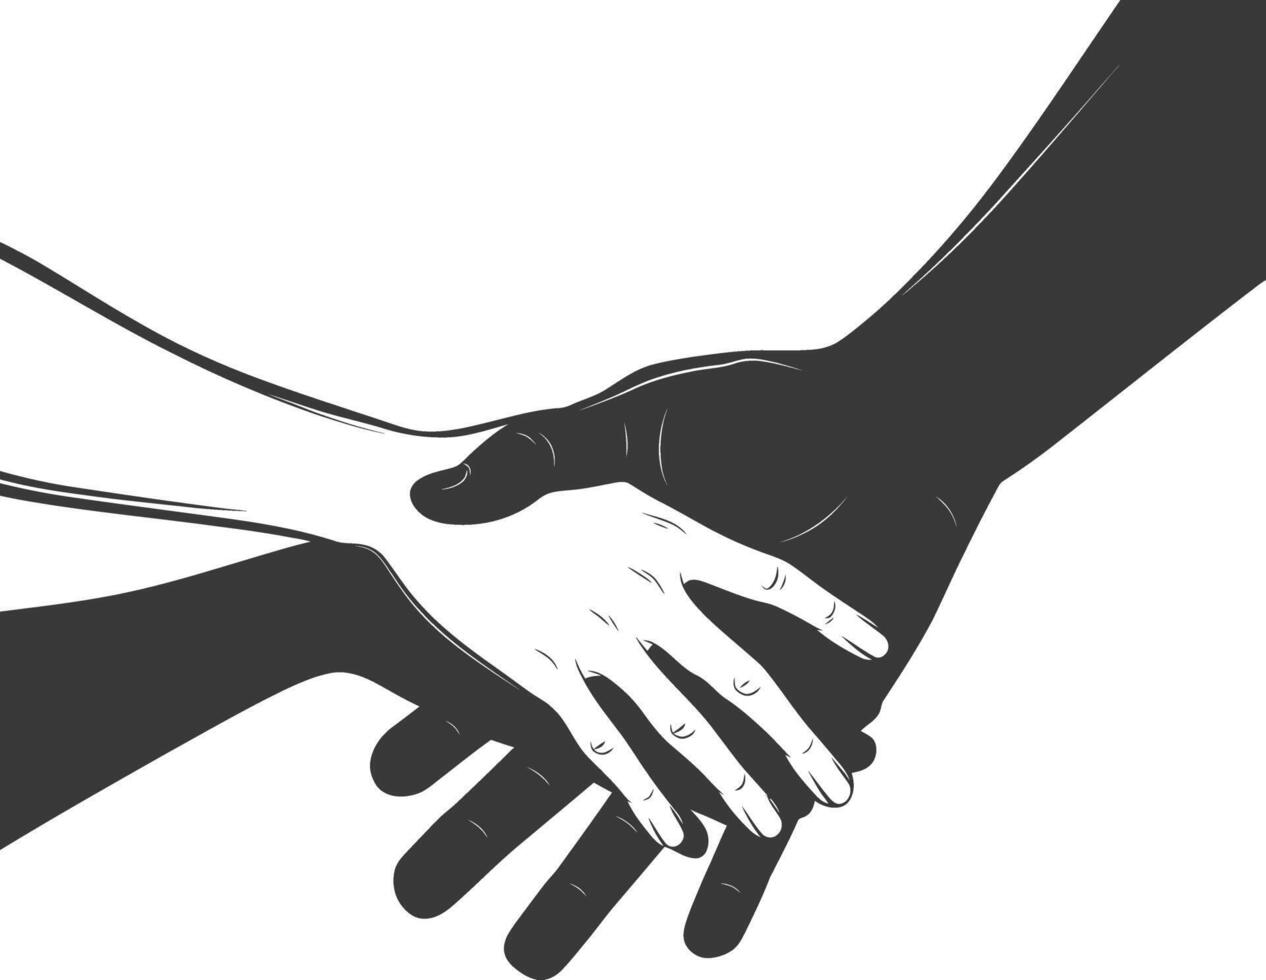 silhueta juntando mãos segurando dentro harmonia e Paz entre raças vetor